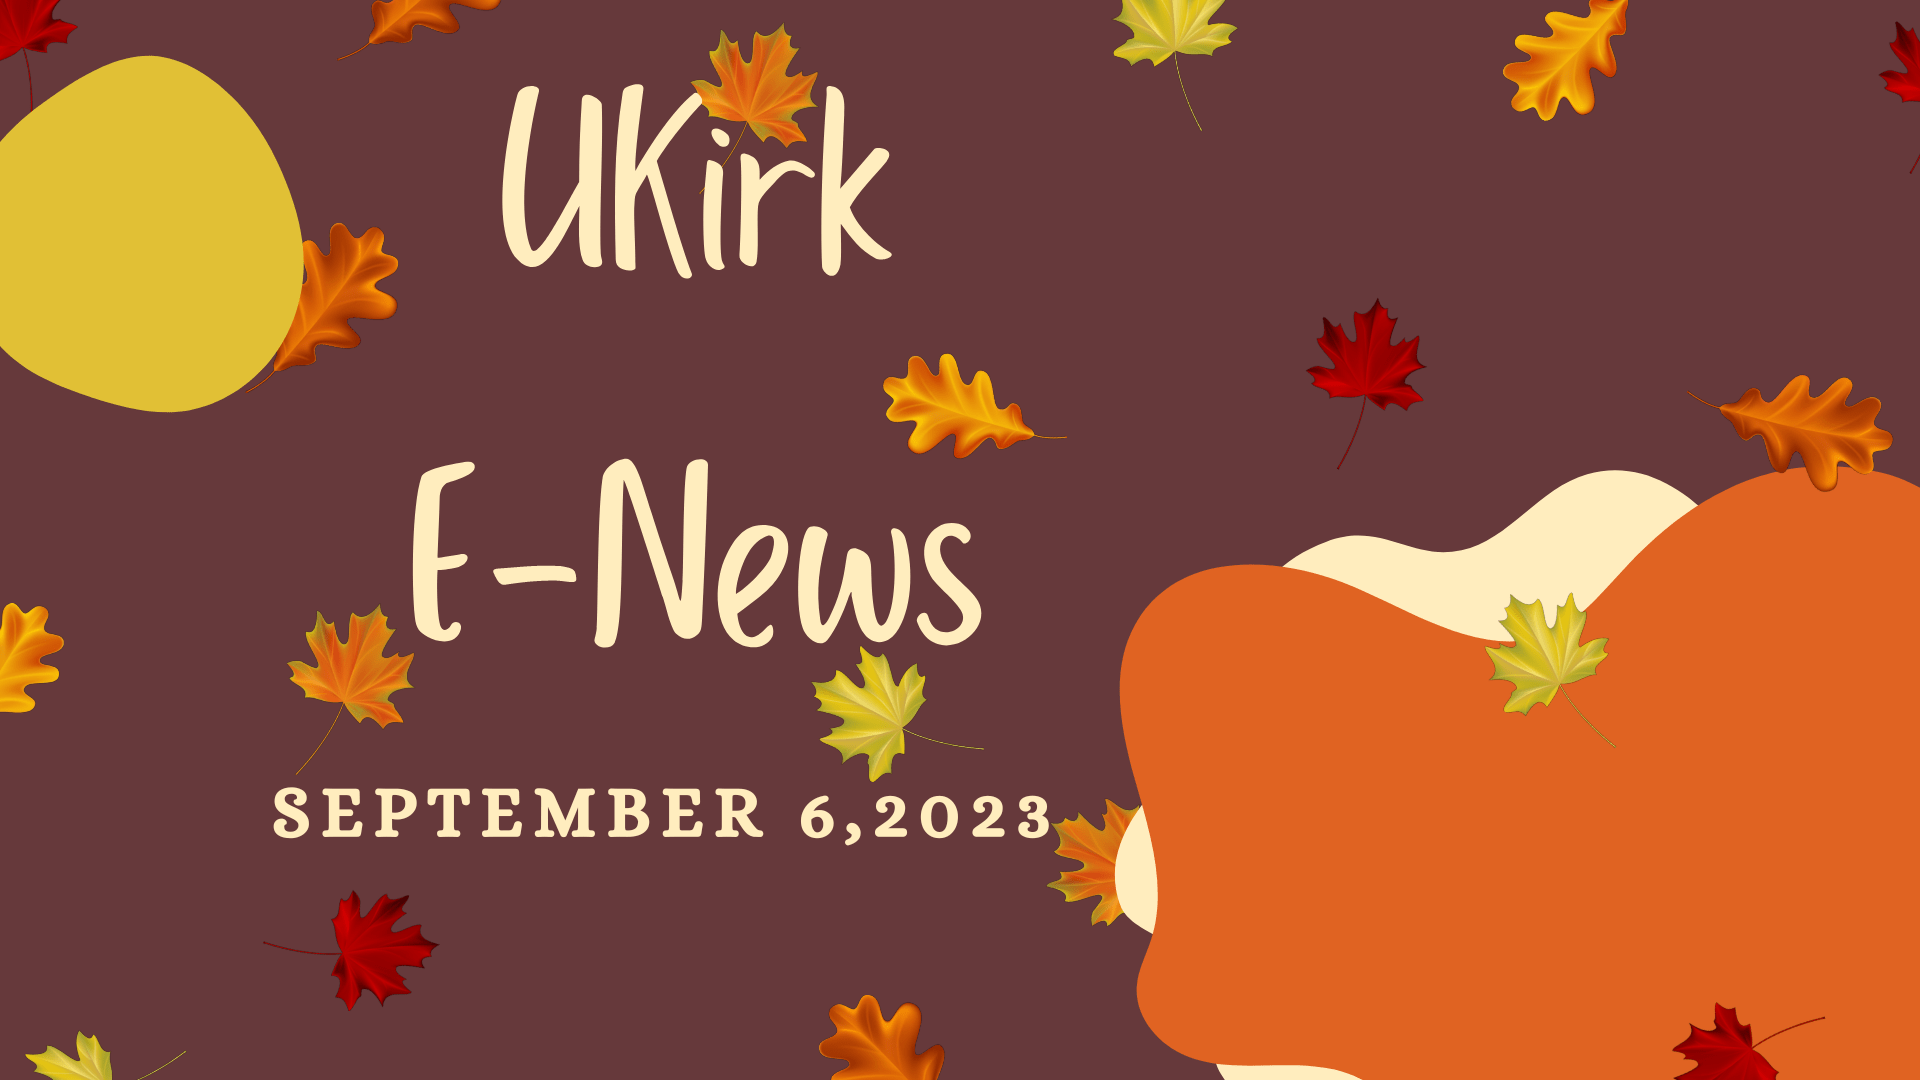 UKirk E-News & Opportunities